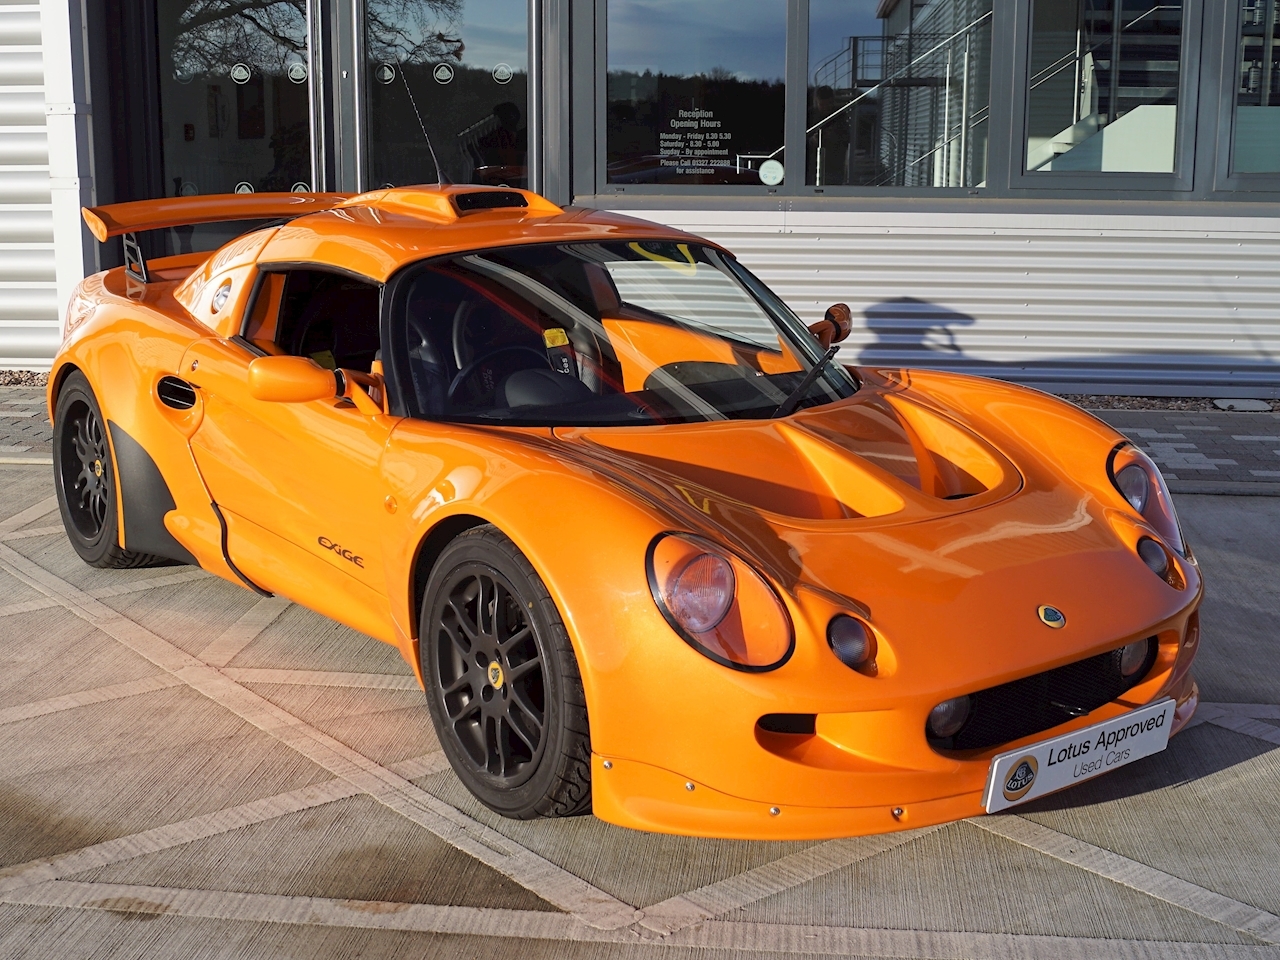 Used Lotus Exige S1 (U254) For Sale | Lotus Silverstone Ltd